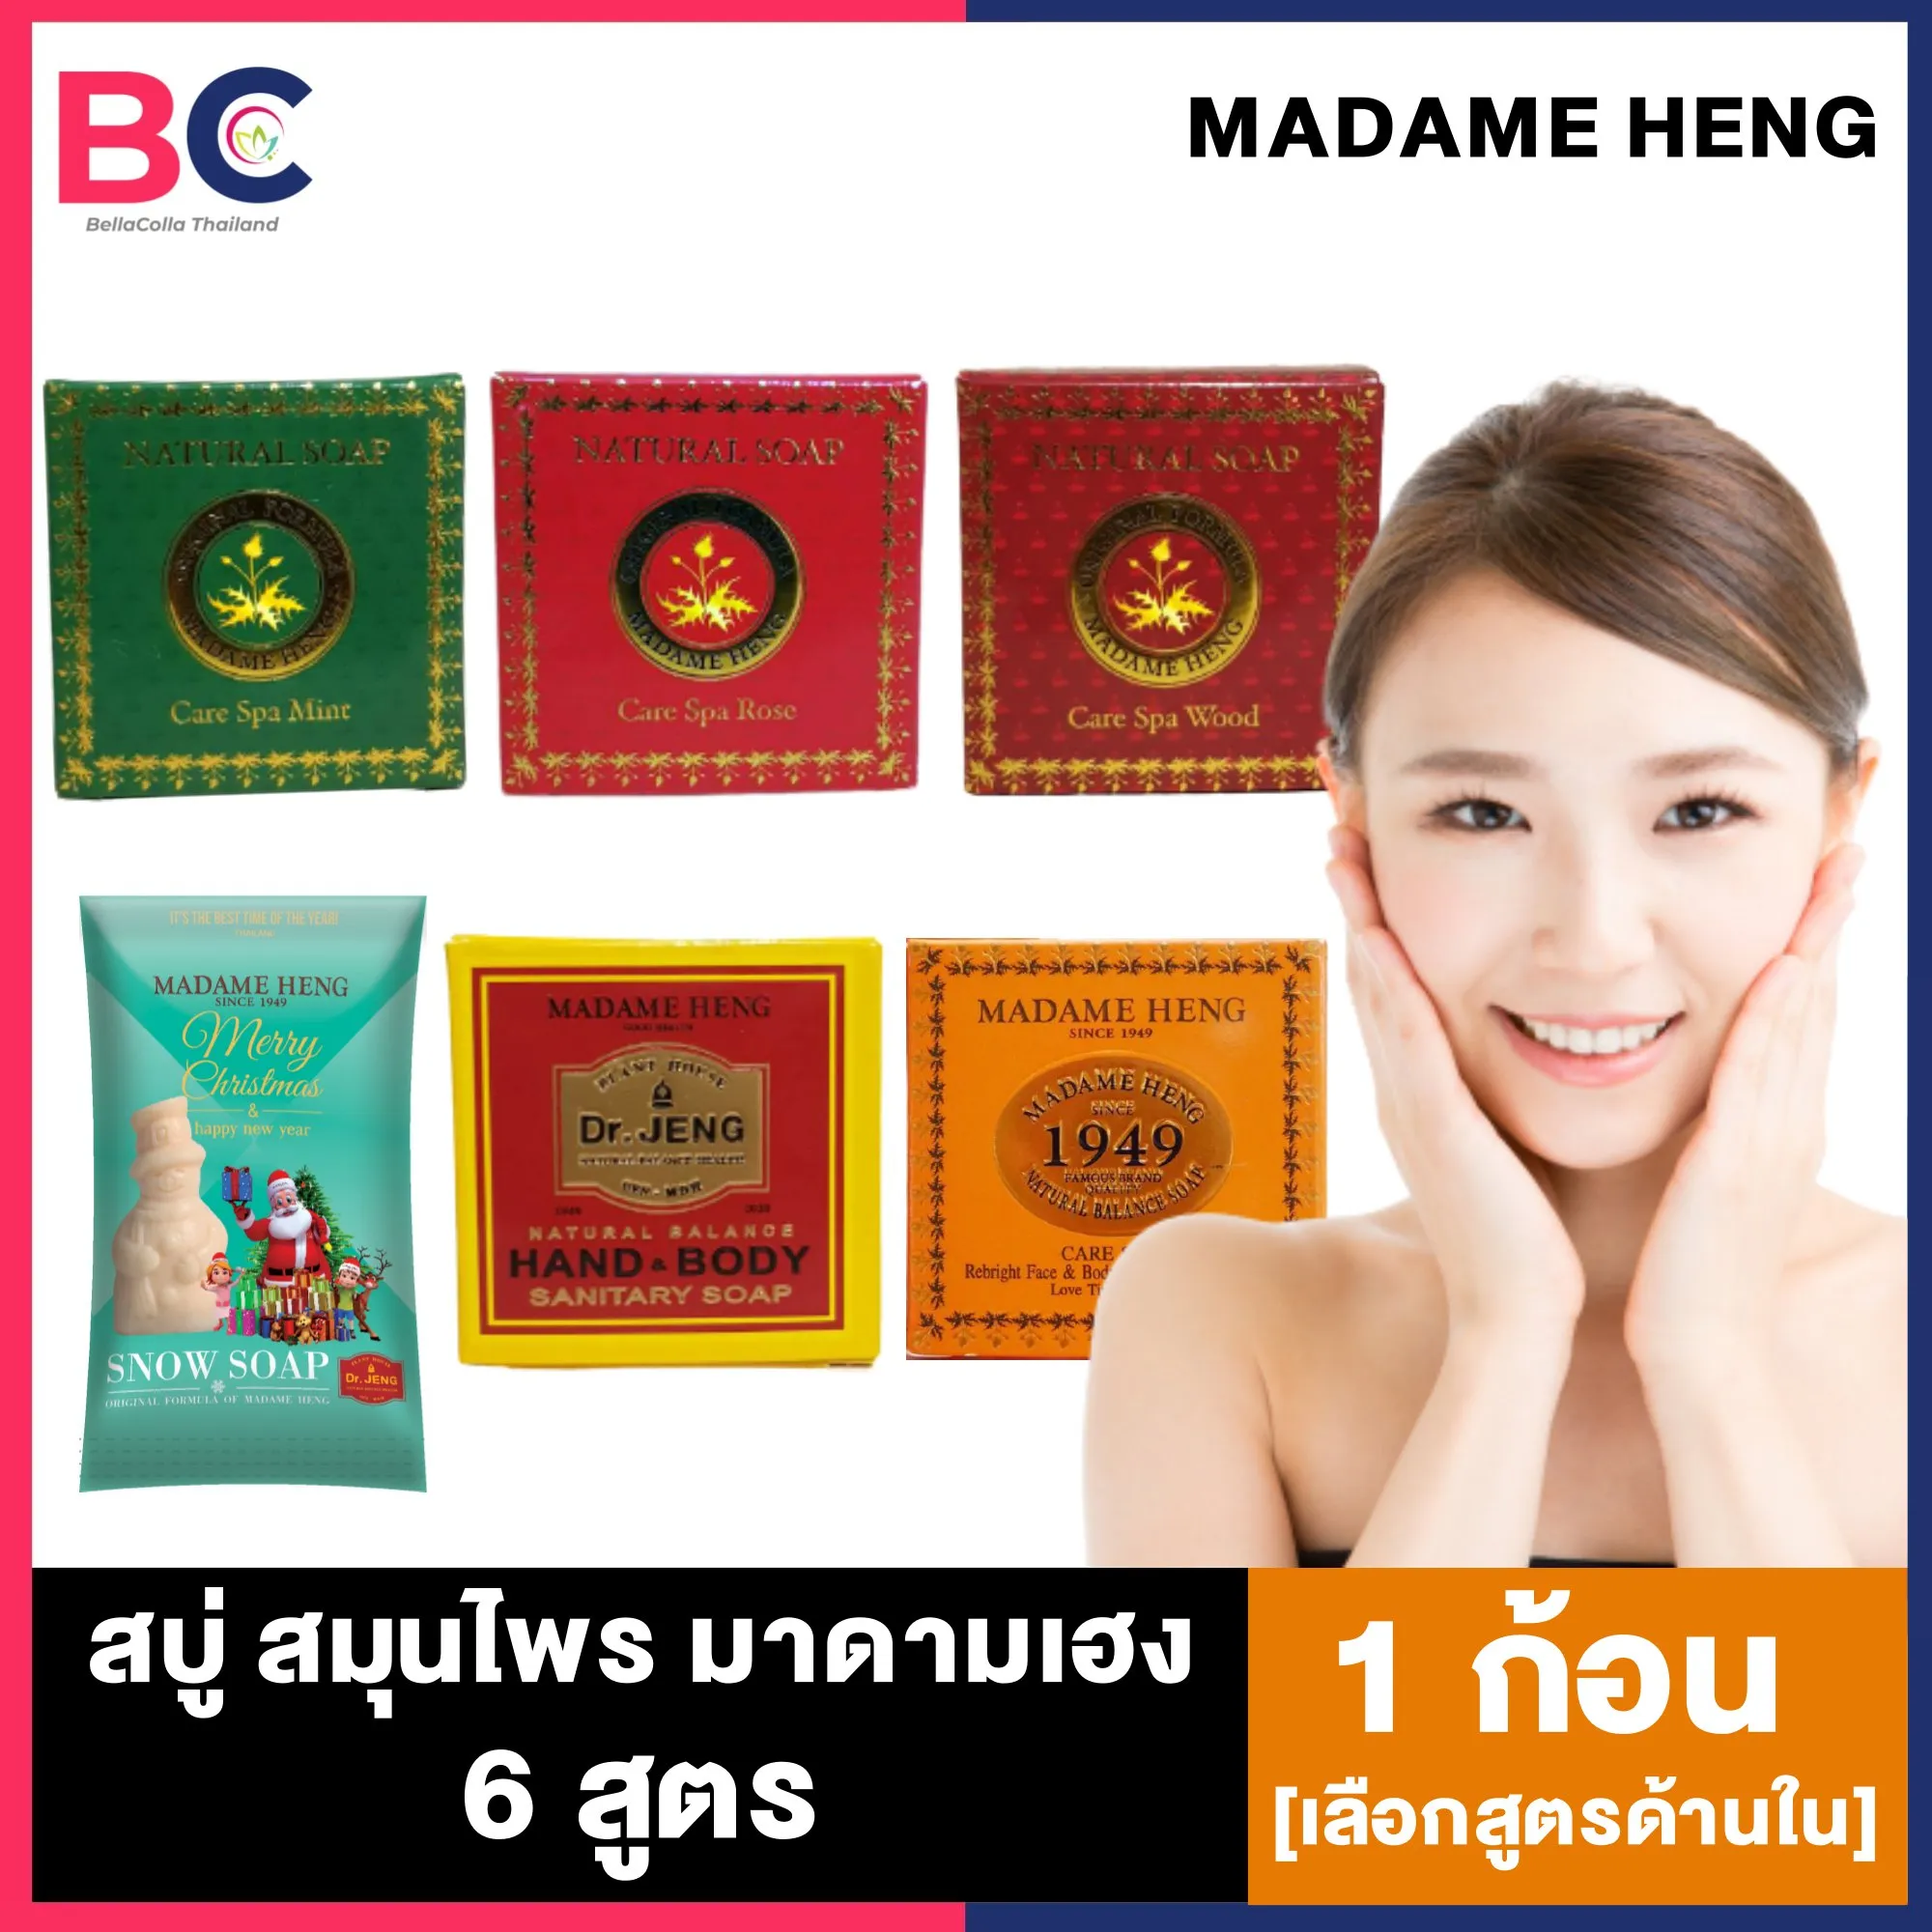 สบู่มาดามเฮง Madame heng Natural Balance Soap Original Formula Of Madam Heng [40/50 กรัม] [เลือกสูตรด้านใน] สบู่มาดามเฮง2020 มาดามเฮง สบู่ผิวขาว สบู่อาบน้ำ สบู่